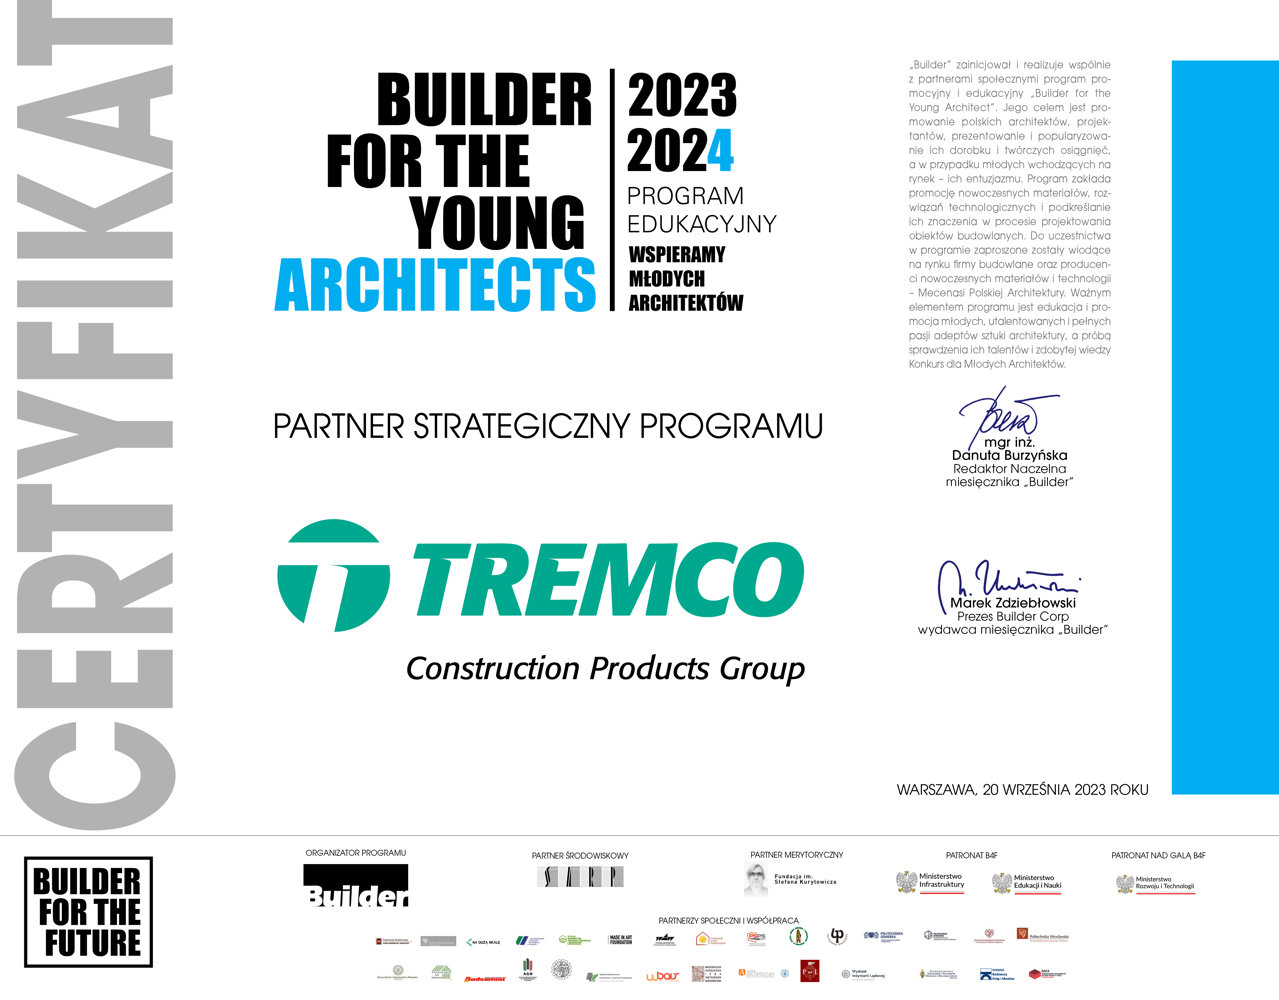 Tremco CPG Poland partnerem strategicznym programu  „Builder For The Young Architects”